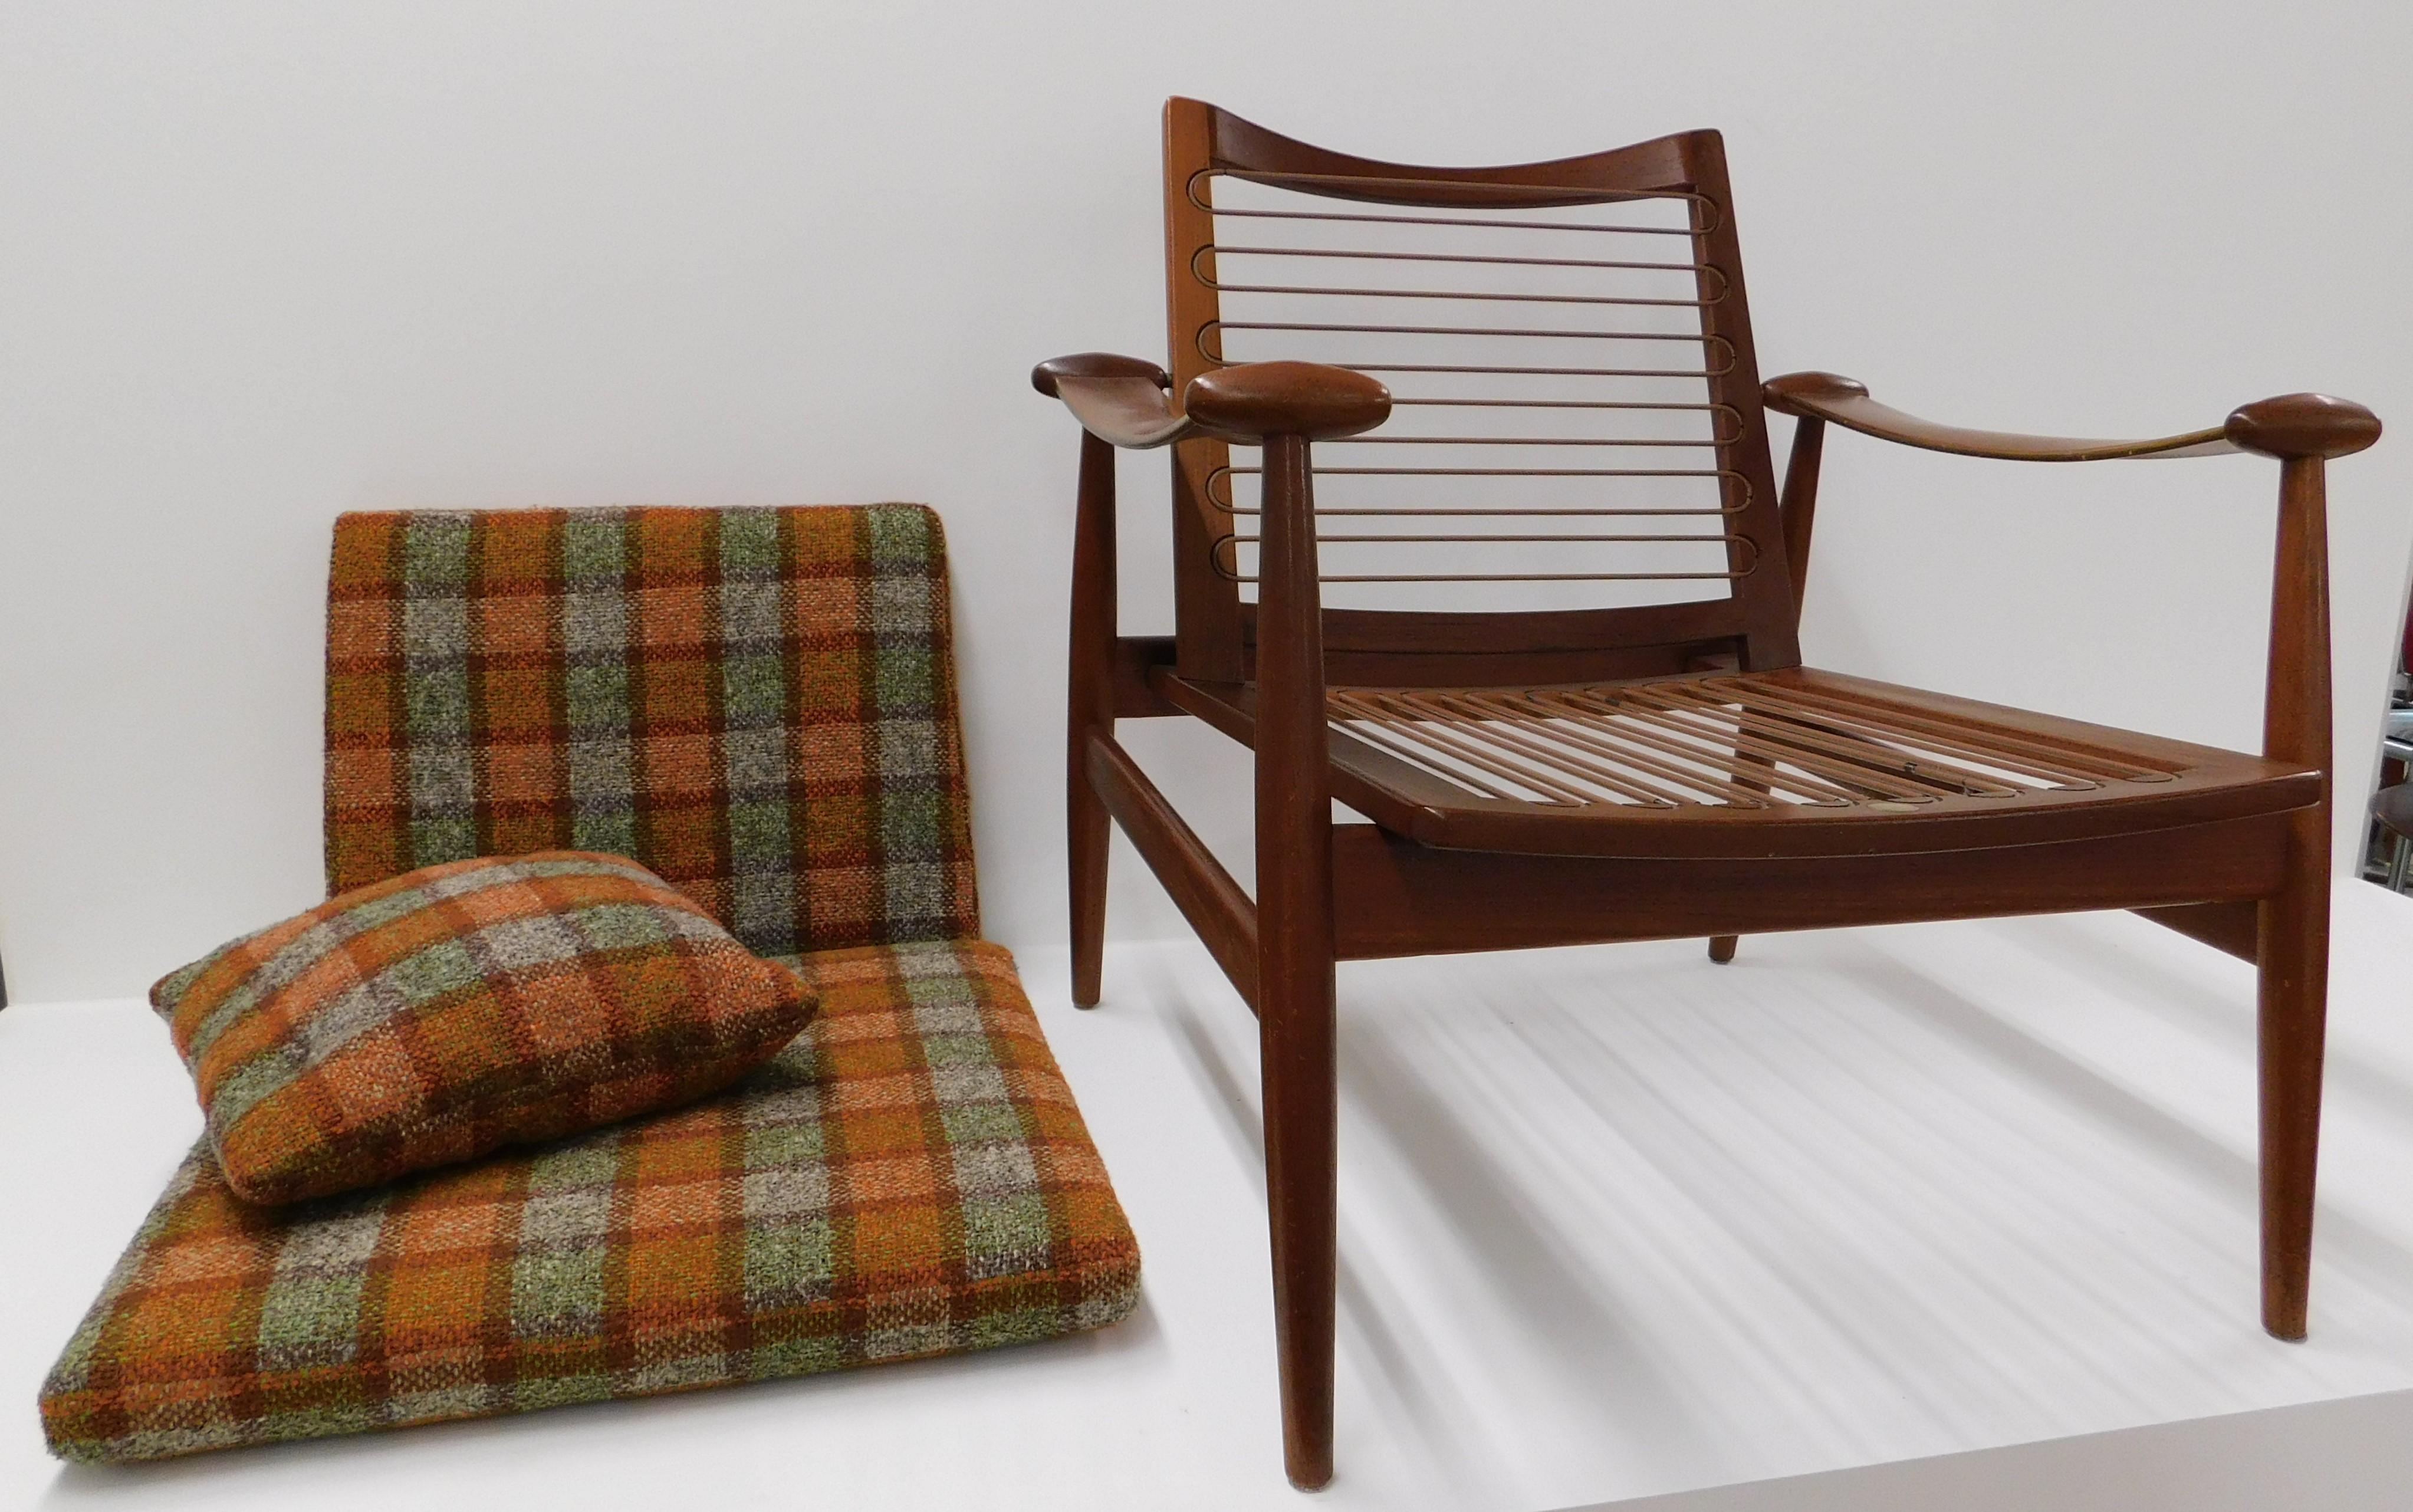 Upholstery Pair of Finn Juhl 1953 Spade Teak Lounge Chair by France & Daverkosen Denmark